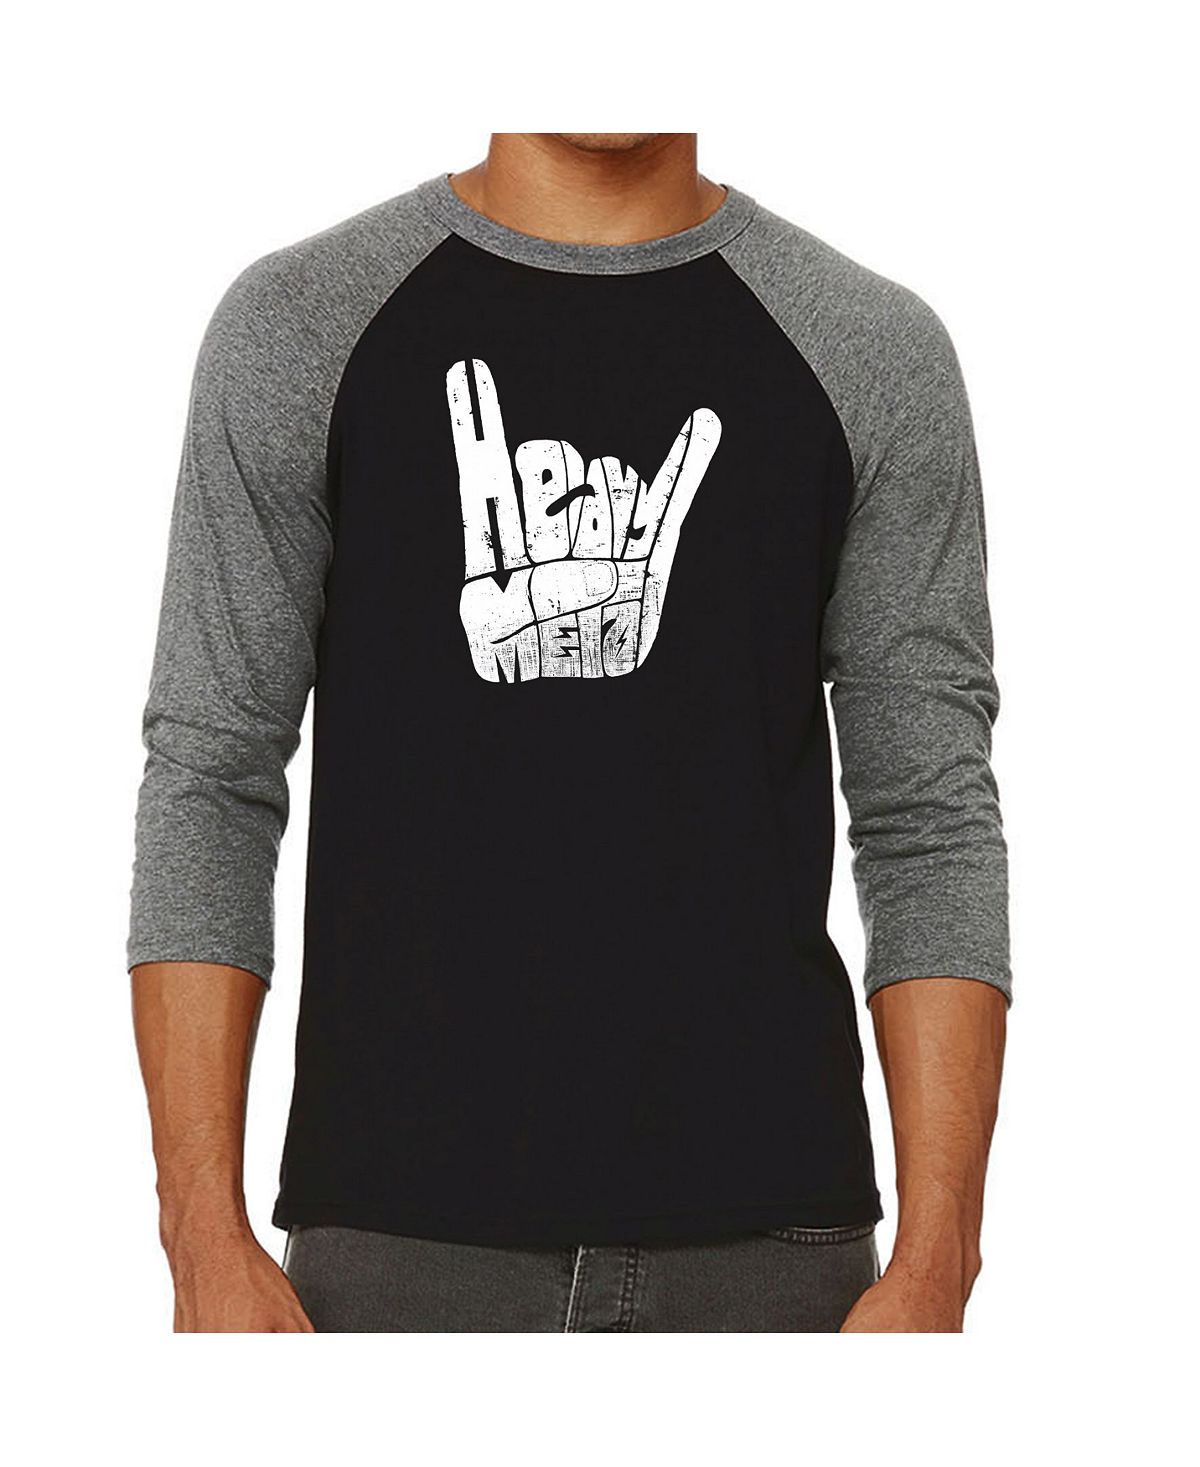 Мужская футболка с надписью «хэви-метал» и регланом word art LA Pop Art, серый мужская футболка жест коза рок s красный